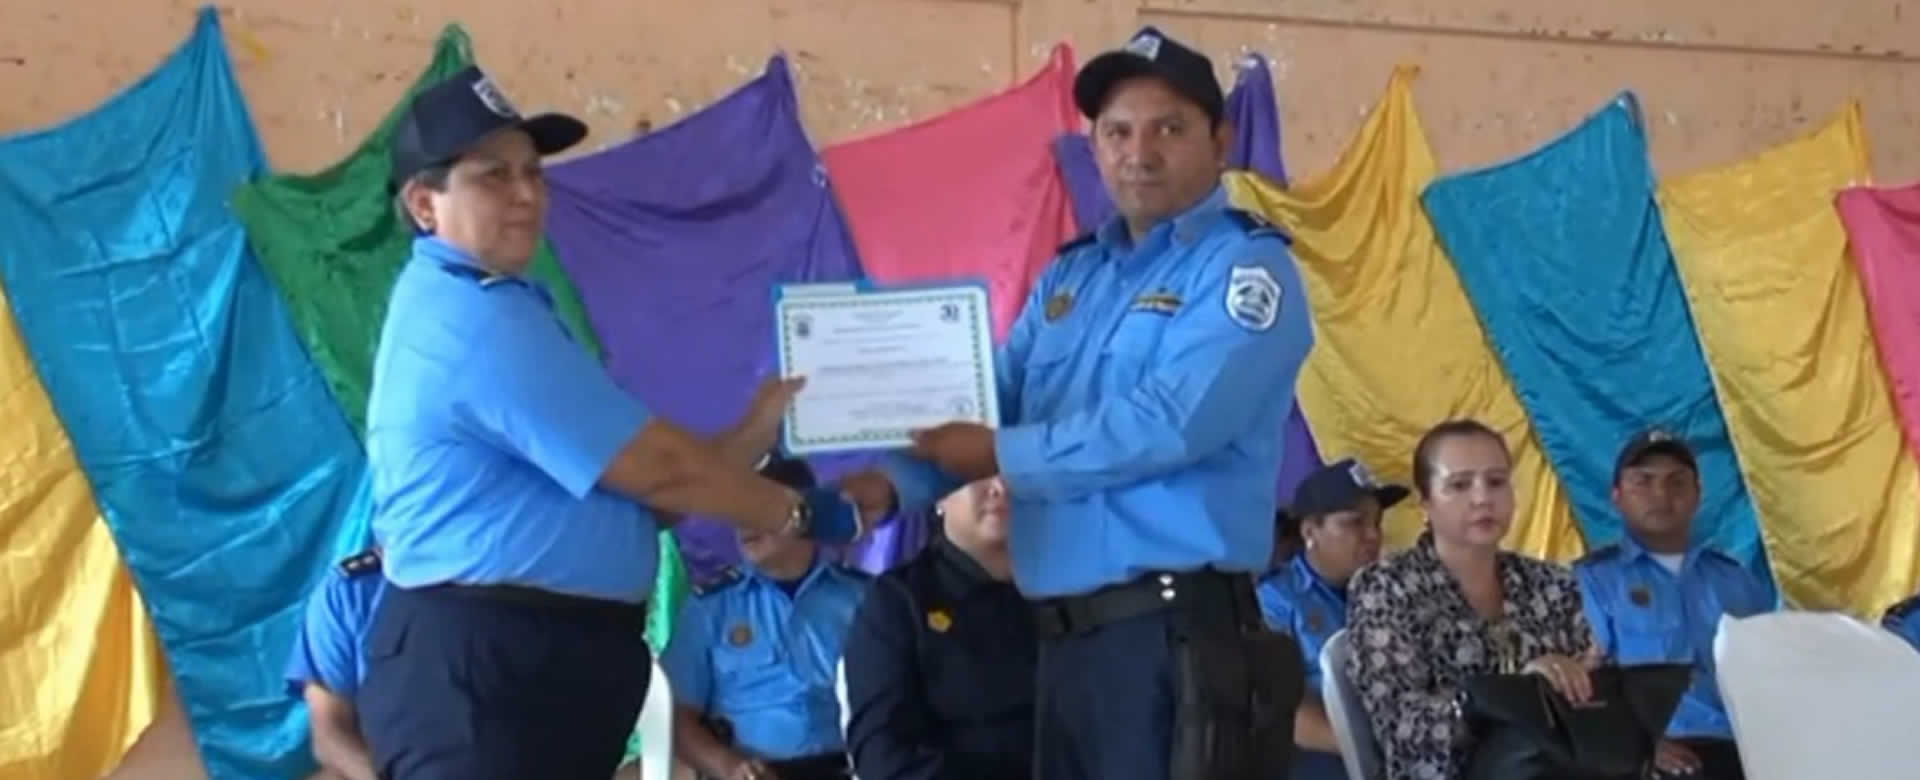 Policías de San Rafael del Sur reciben con honor un merecido reconocimiento